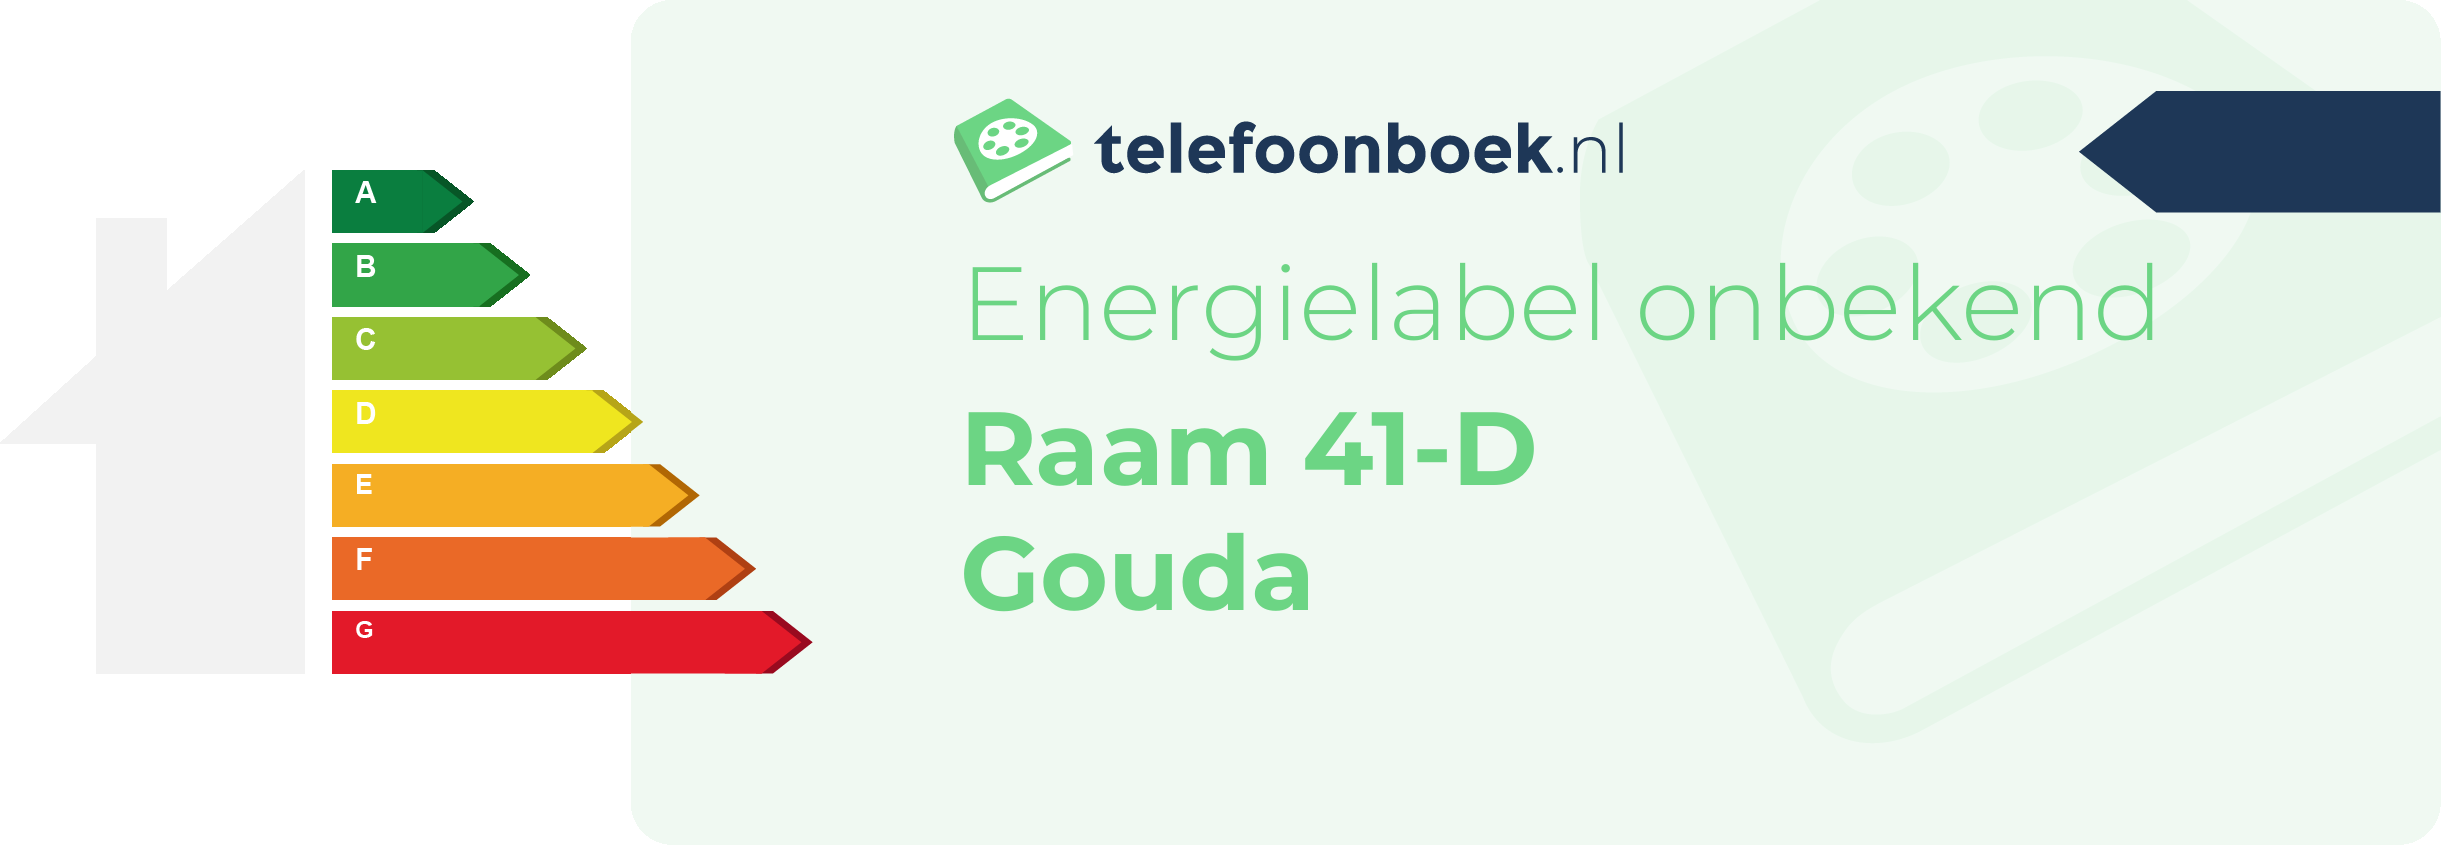 Energielabel Raam 41-D Gouda